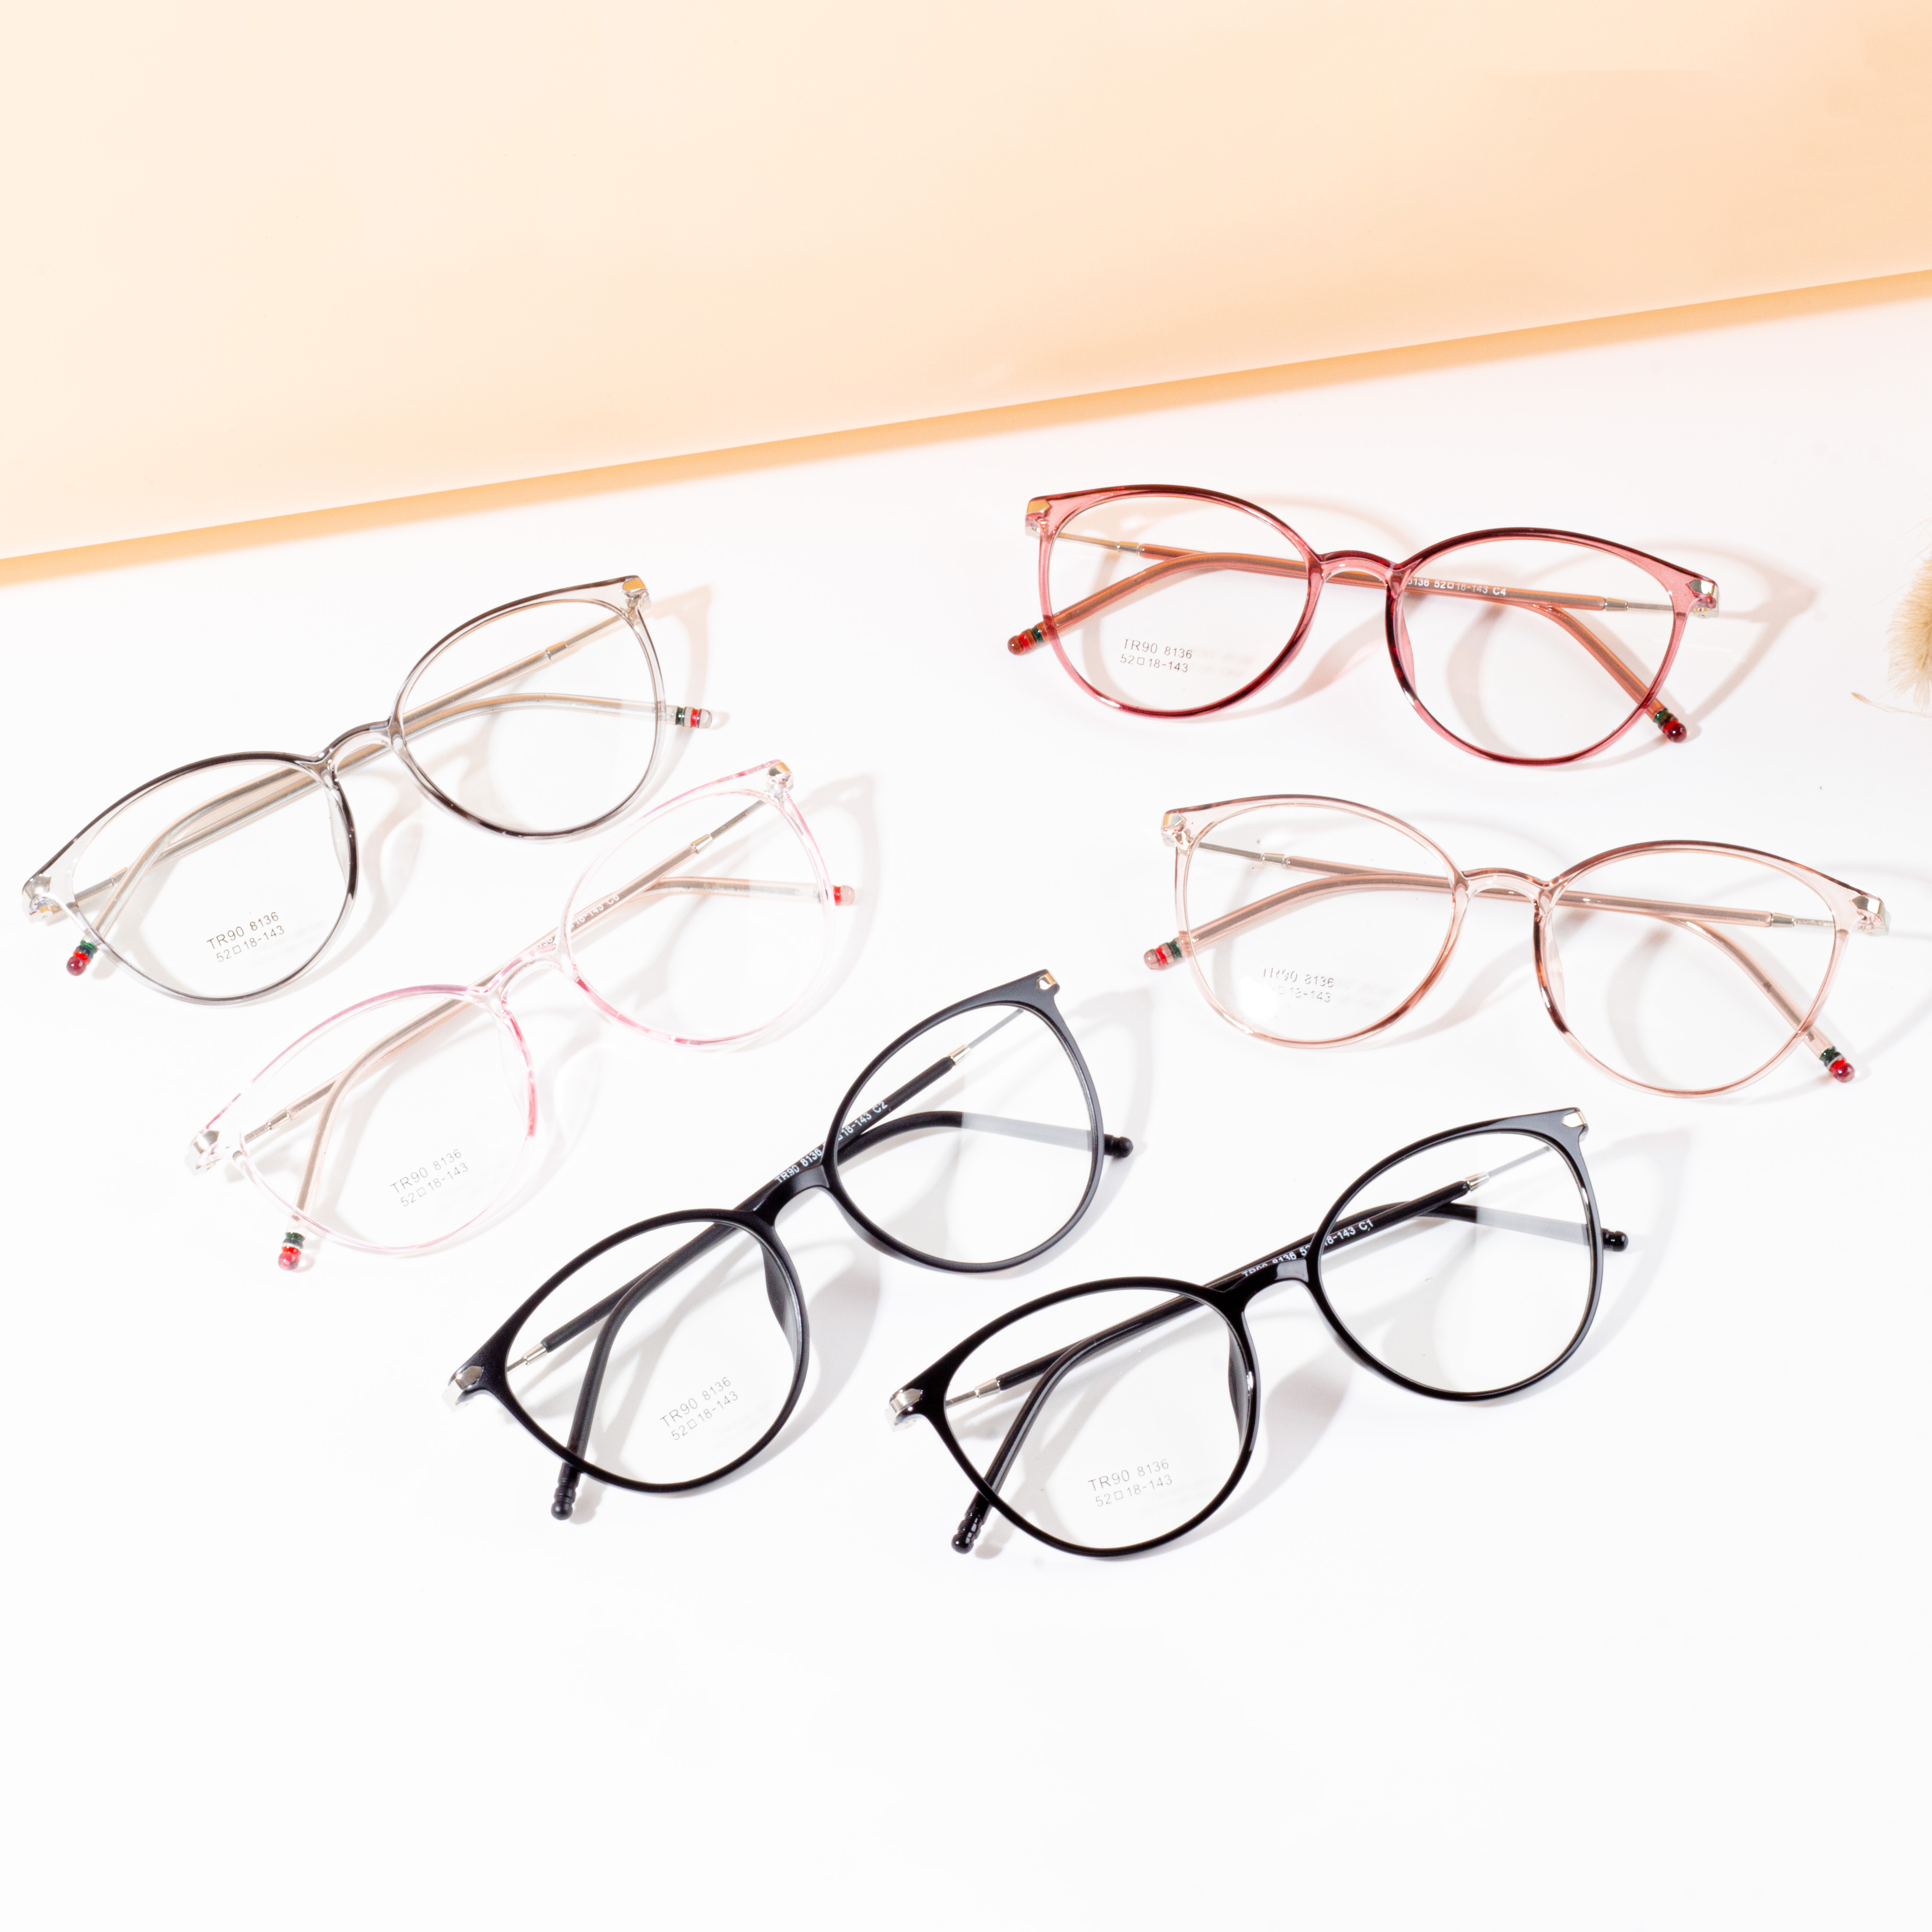 elastyczne oprawki okularowe